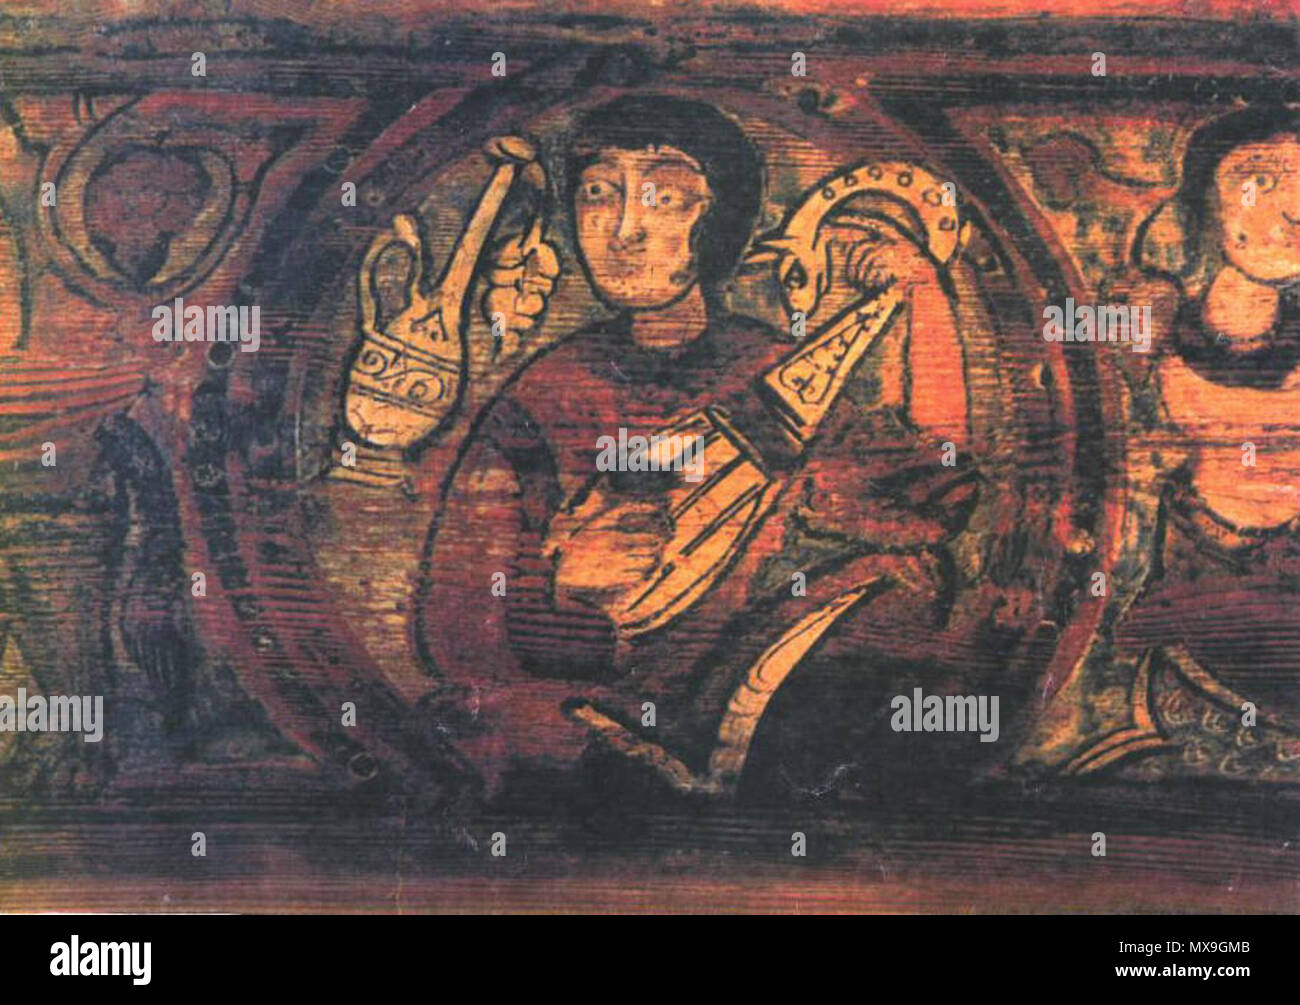 Inglés: Imagen del siglo XII de la Catedral de Cefalú, un laúd de tipo de  instrumento que se ha denominado una guitarra morisca por un moderno  constructor de instrumentos antiguos. Él